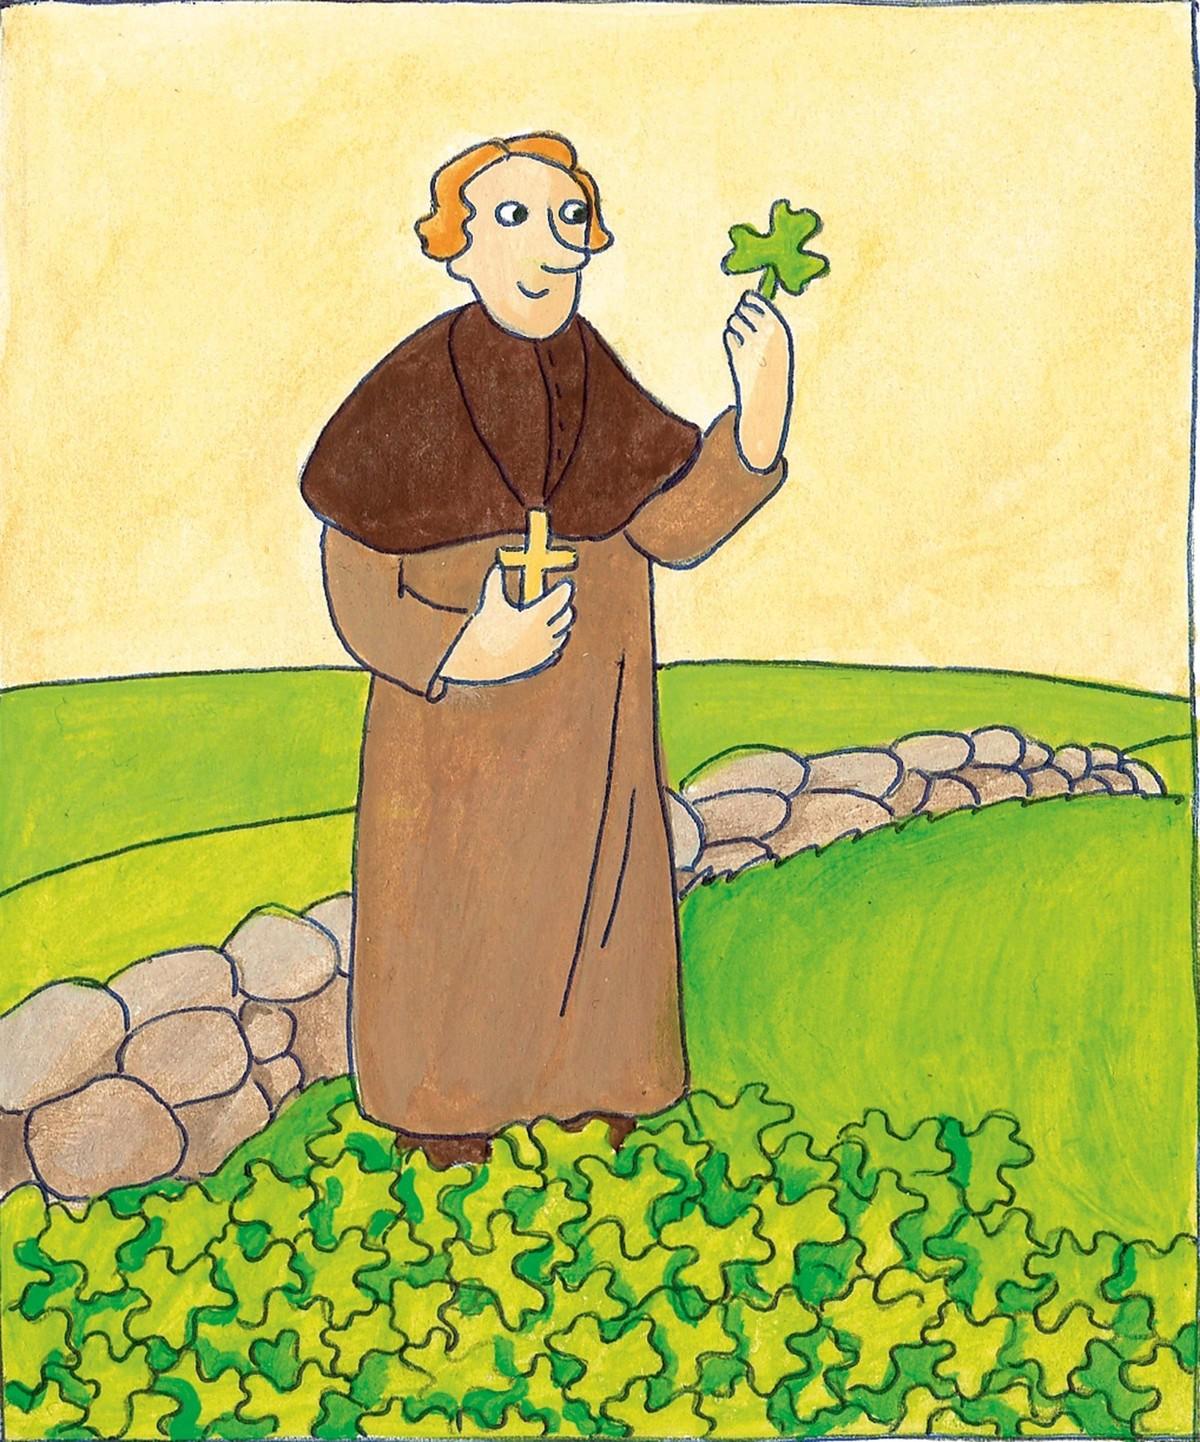 Saint patrick tenant un trèfle dans sa main